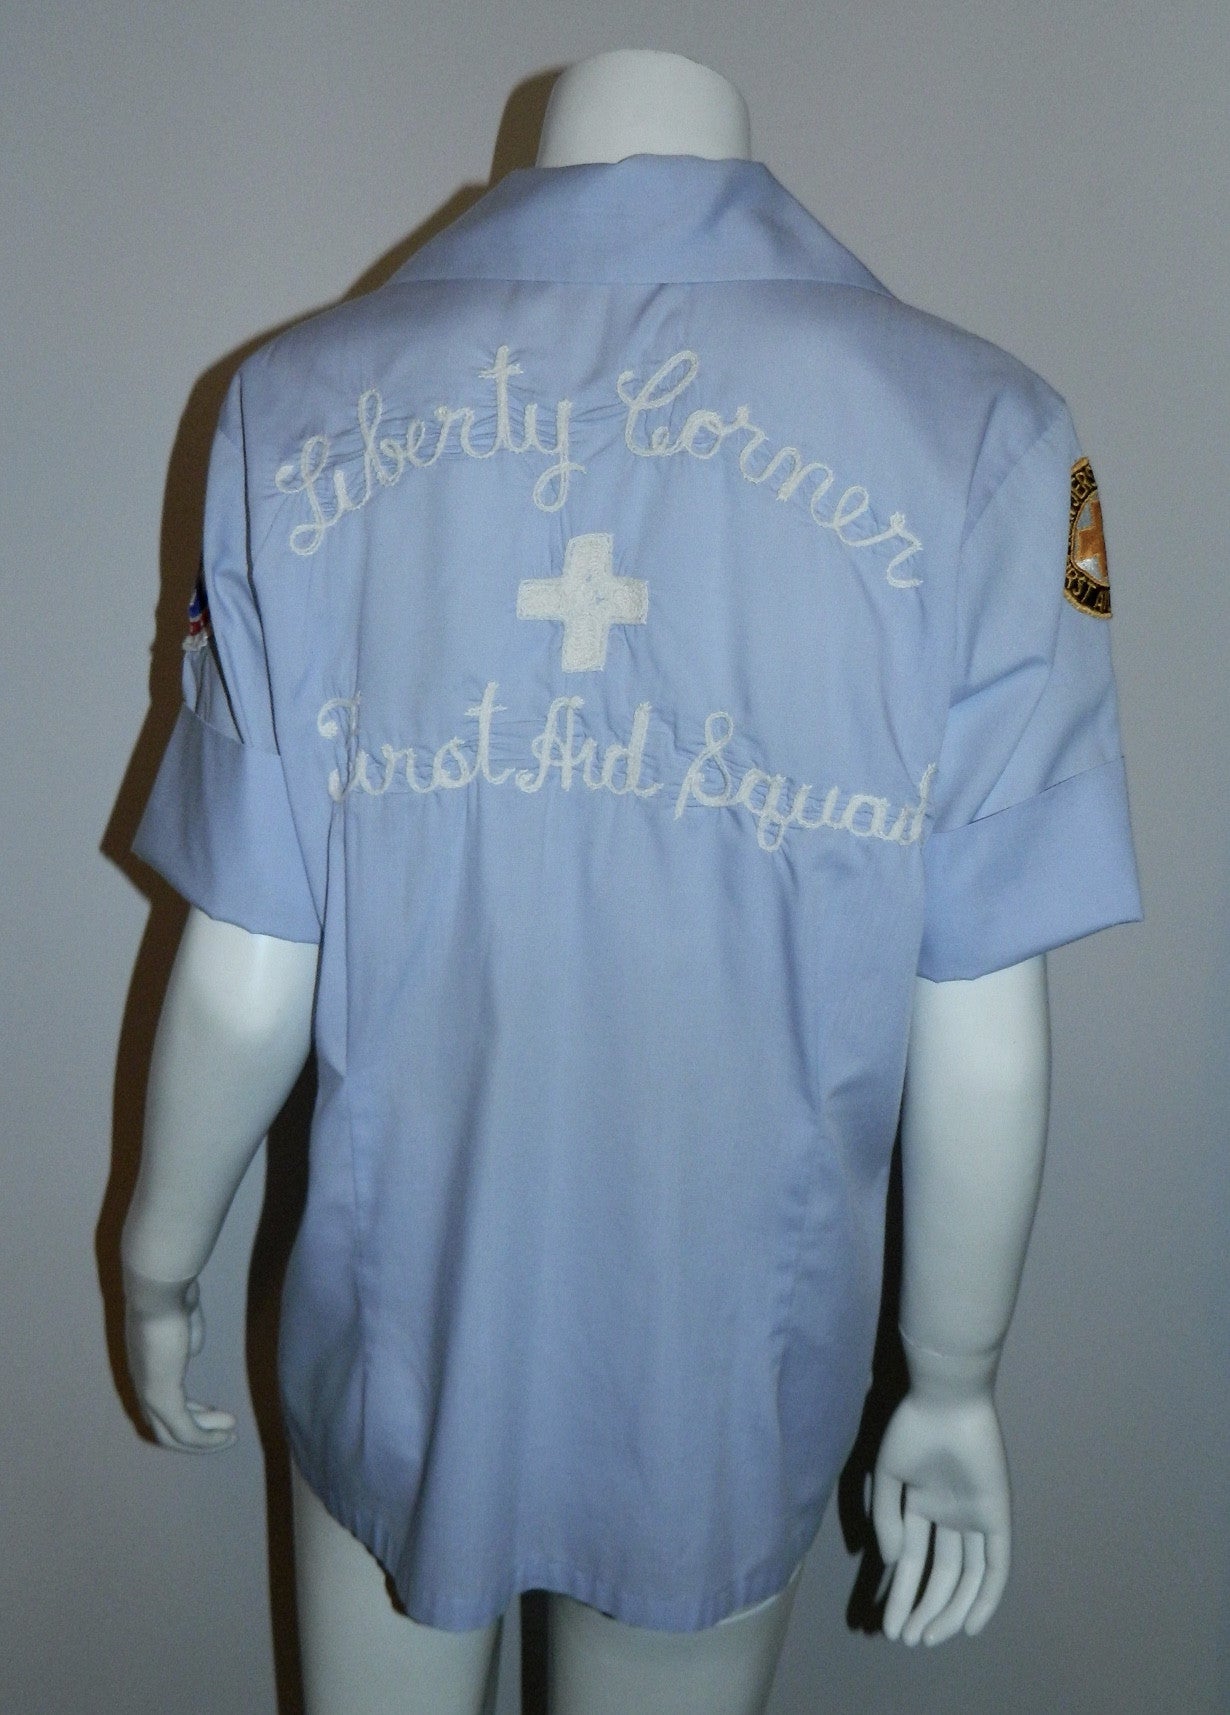 vintage 1960s EMT blouse Women's work shirt uniform Liberty Corner First Aid Squad NJ ELBECO